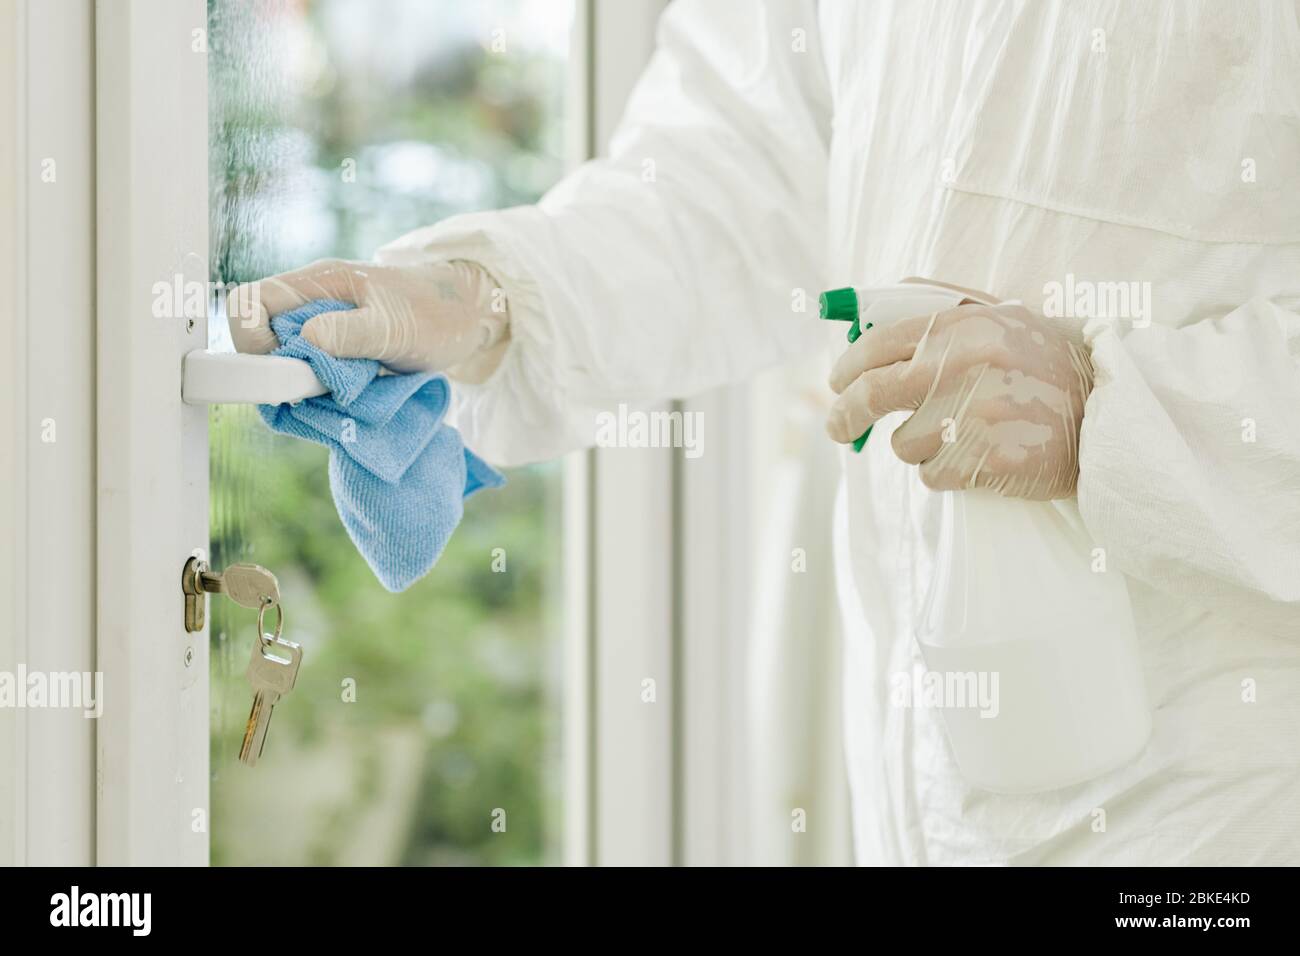 Immagine ravvicinata del tecnico in tuta protettiva e guanti che puliscono la maniglia della porta con spray chimici per uccidere i batteri e prevenire la diffusione delle malattie Foto Stock